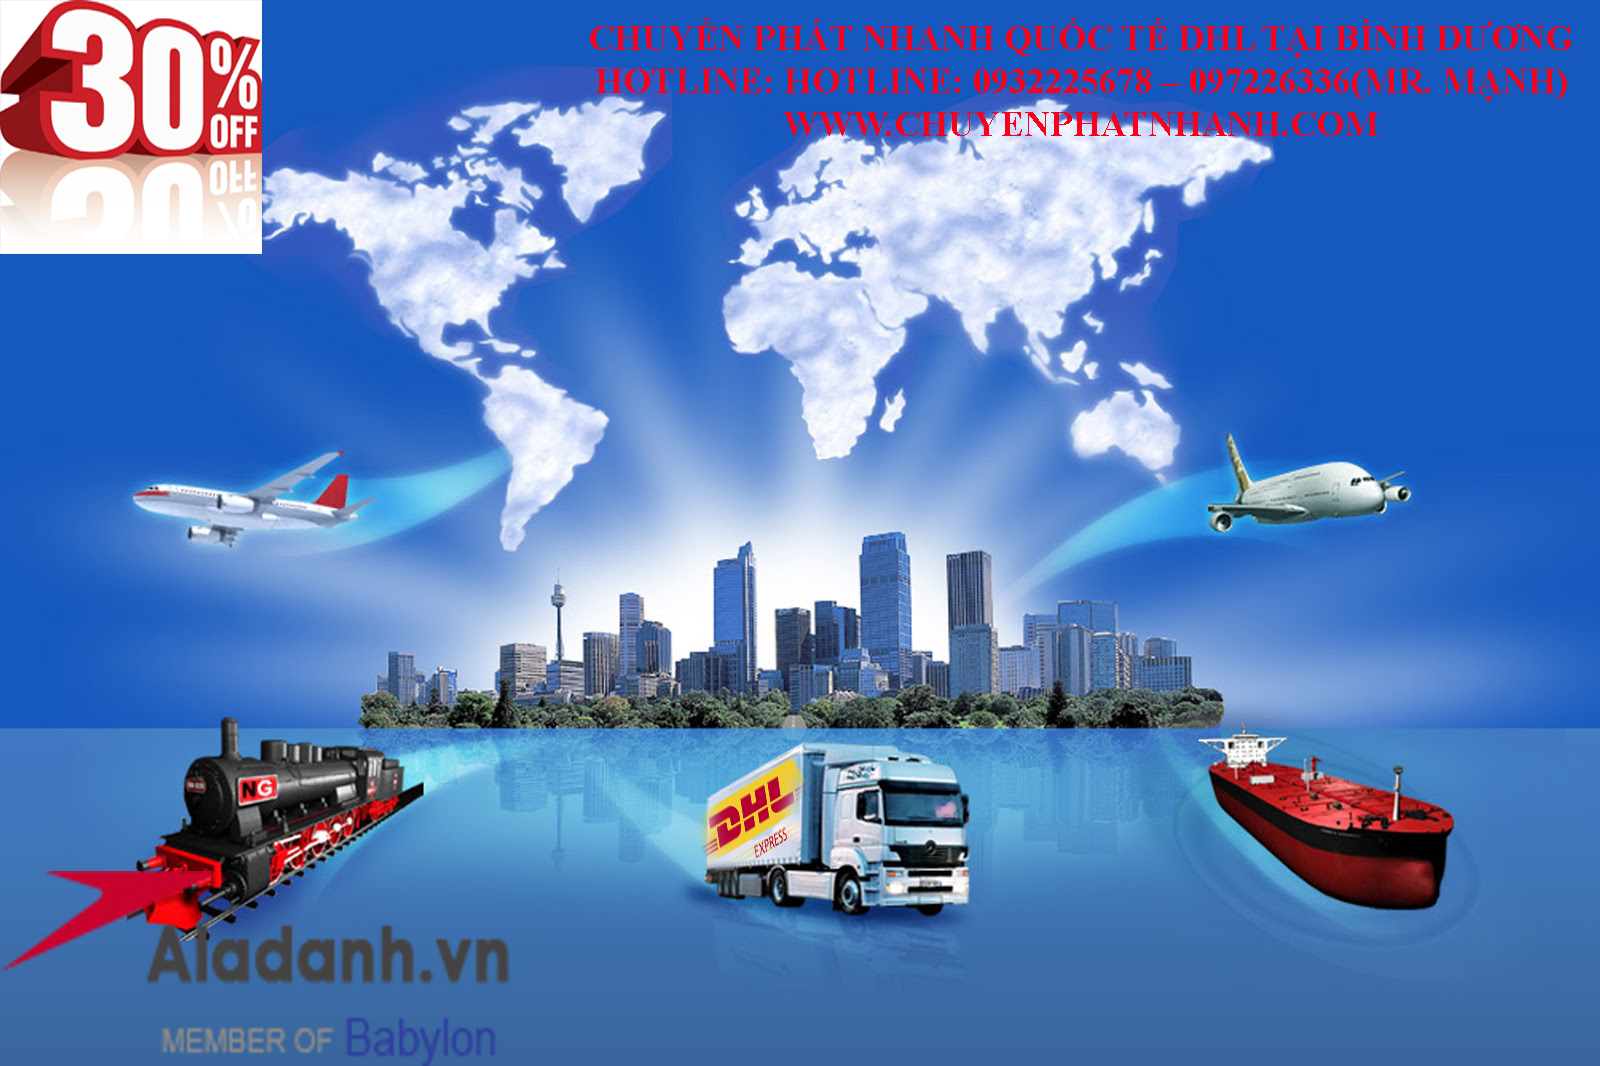 chuyển phát nhanh quốc tế DHL tại Bình dương